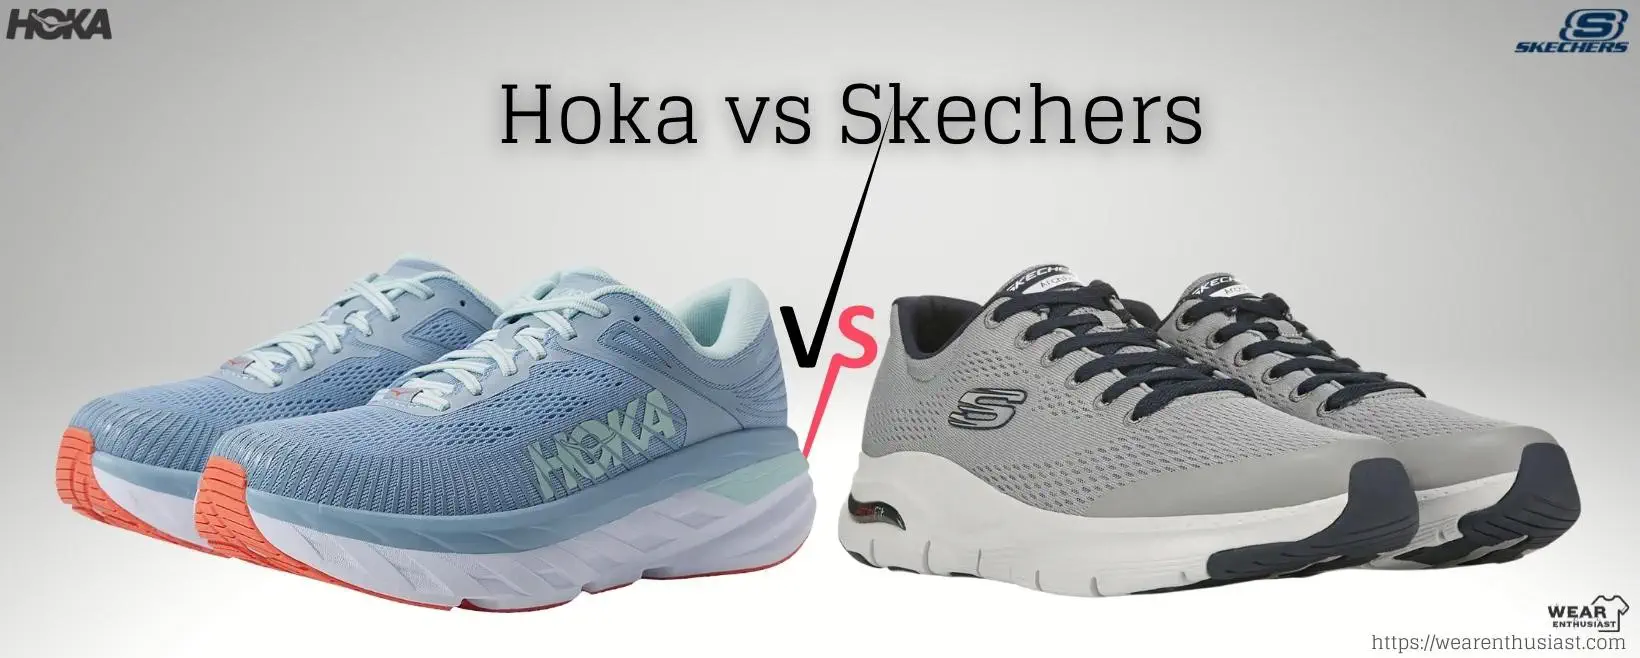 Hoka vs Skechers Shoes